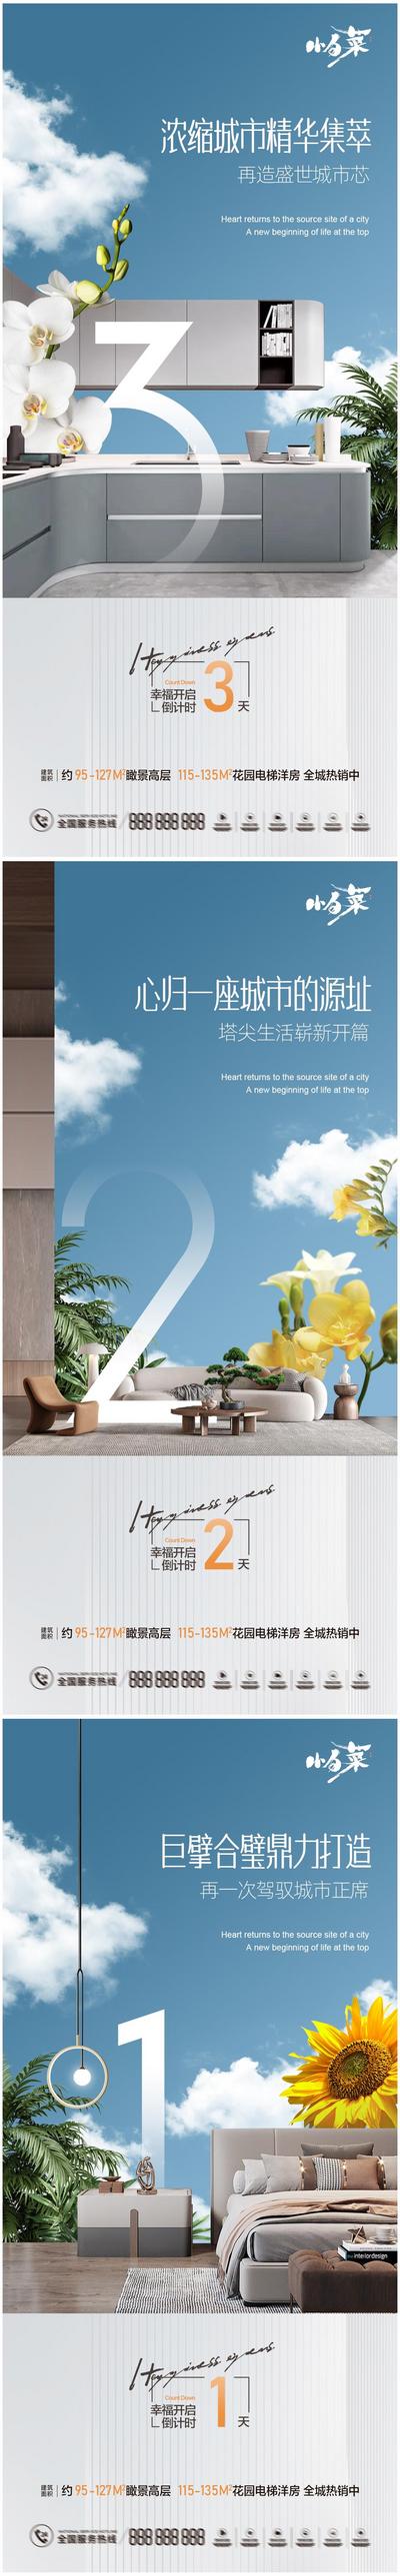 南门网 海报 系列 价值点 倒计时 户型 房地产 开放 家居 数字 花卉 蓝色 清新 广告 地产